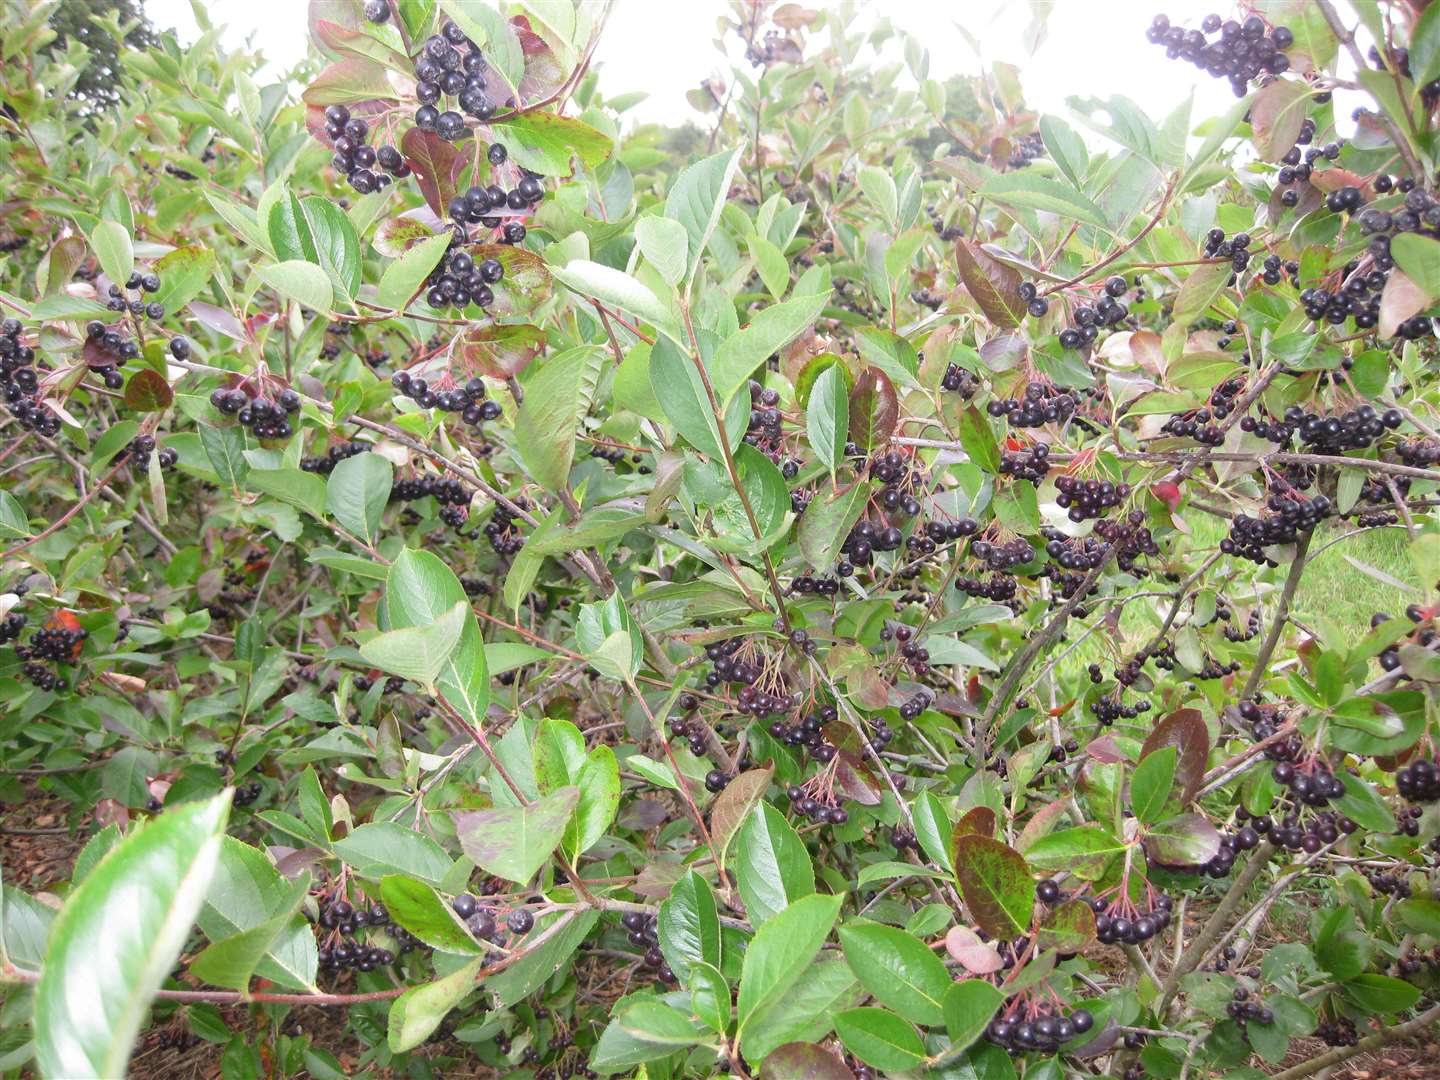 Aronia berry bushes bearing fruit.